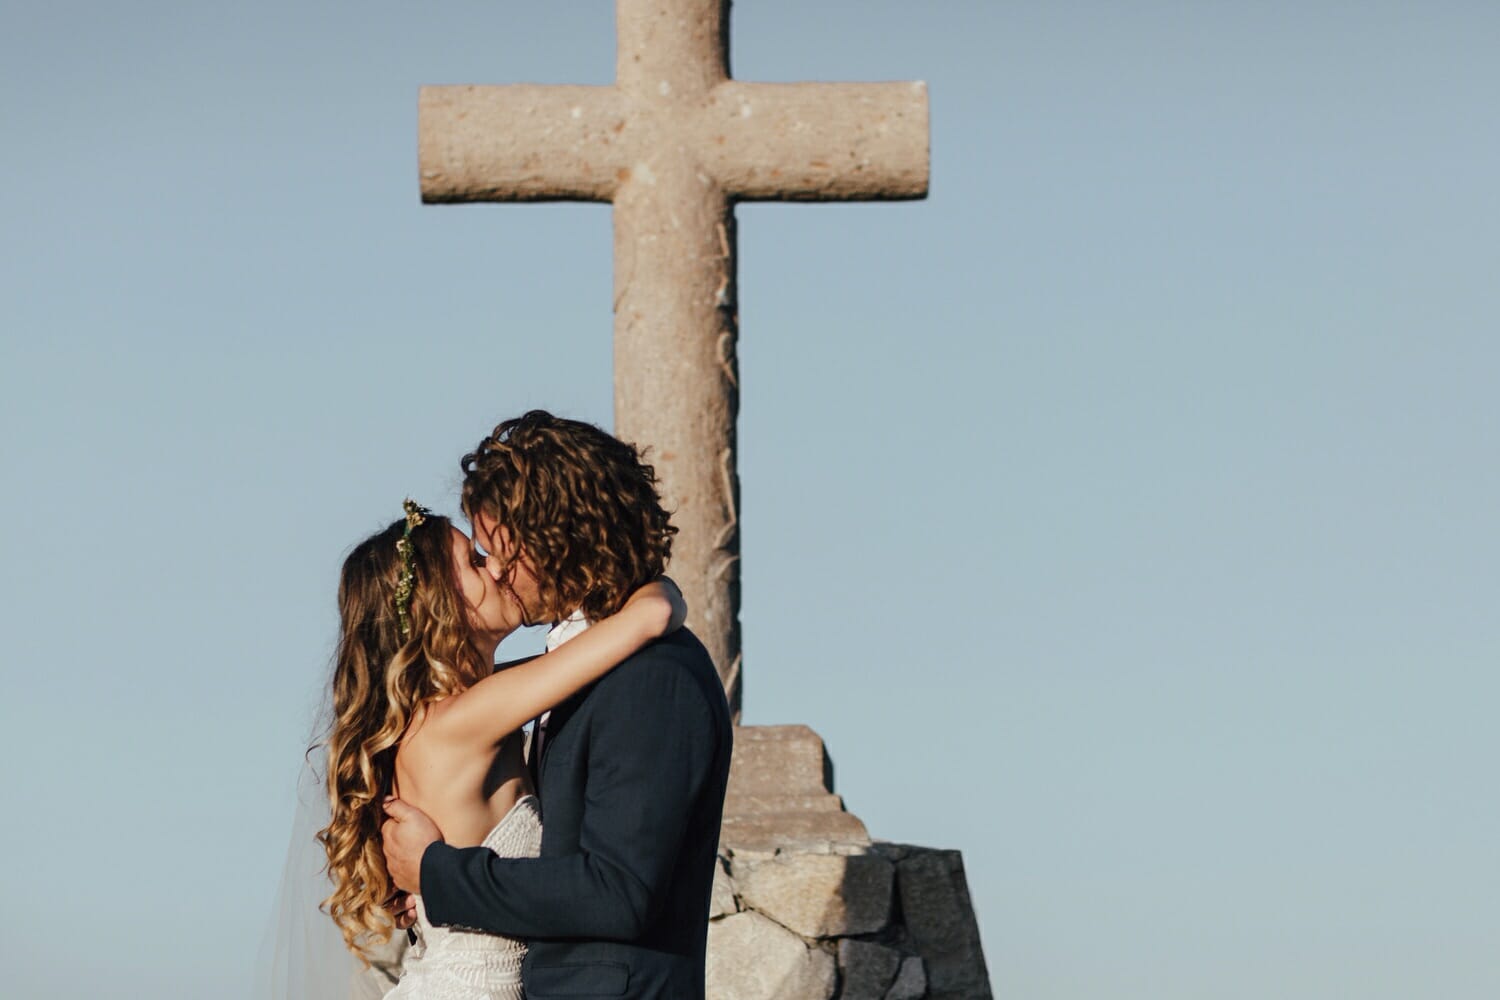 Cabo San Lucas Clifftop Wedding, Destination Wedding Photographer